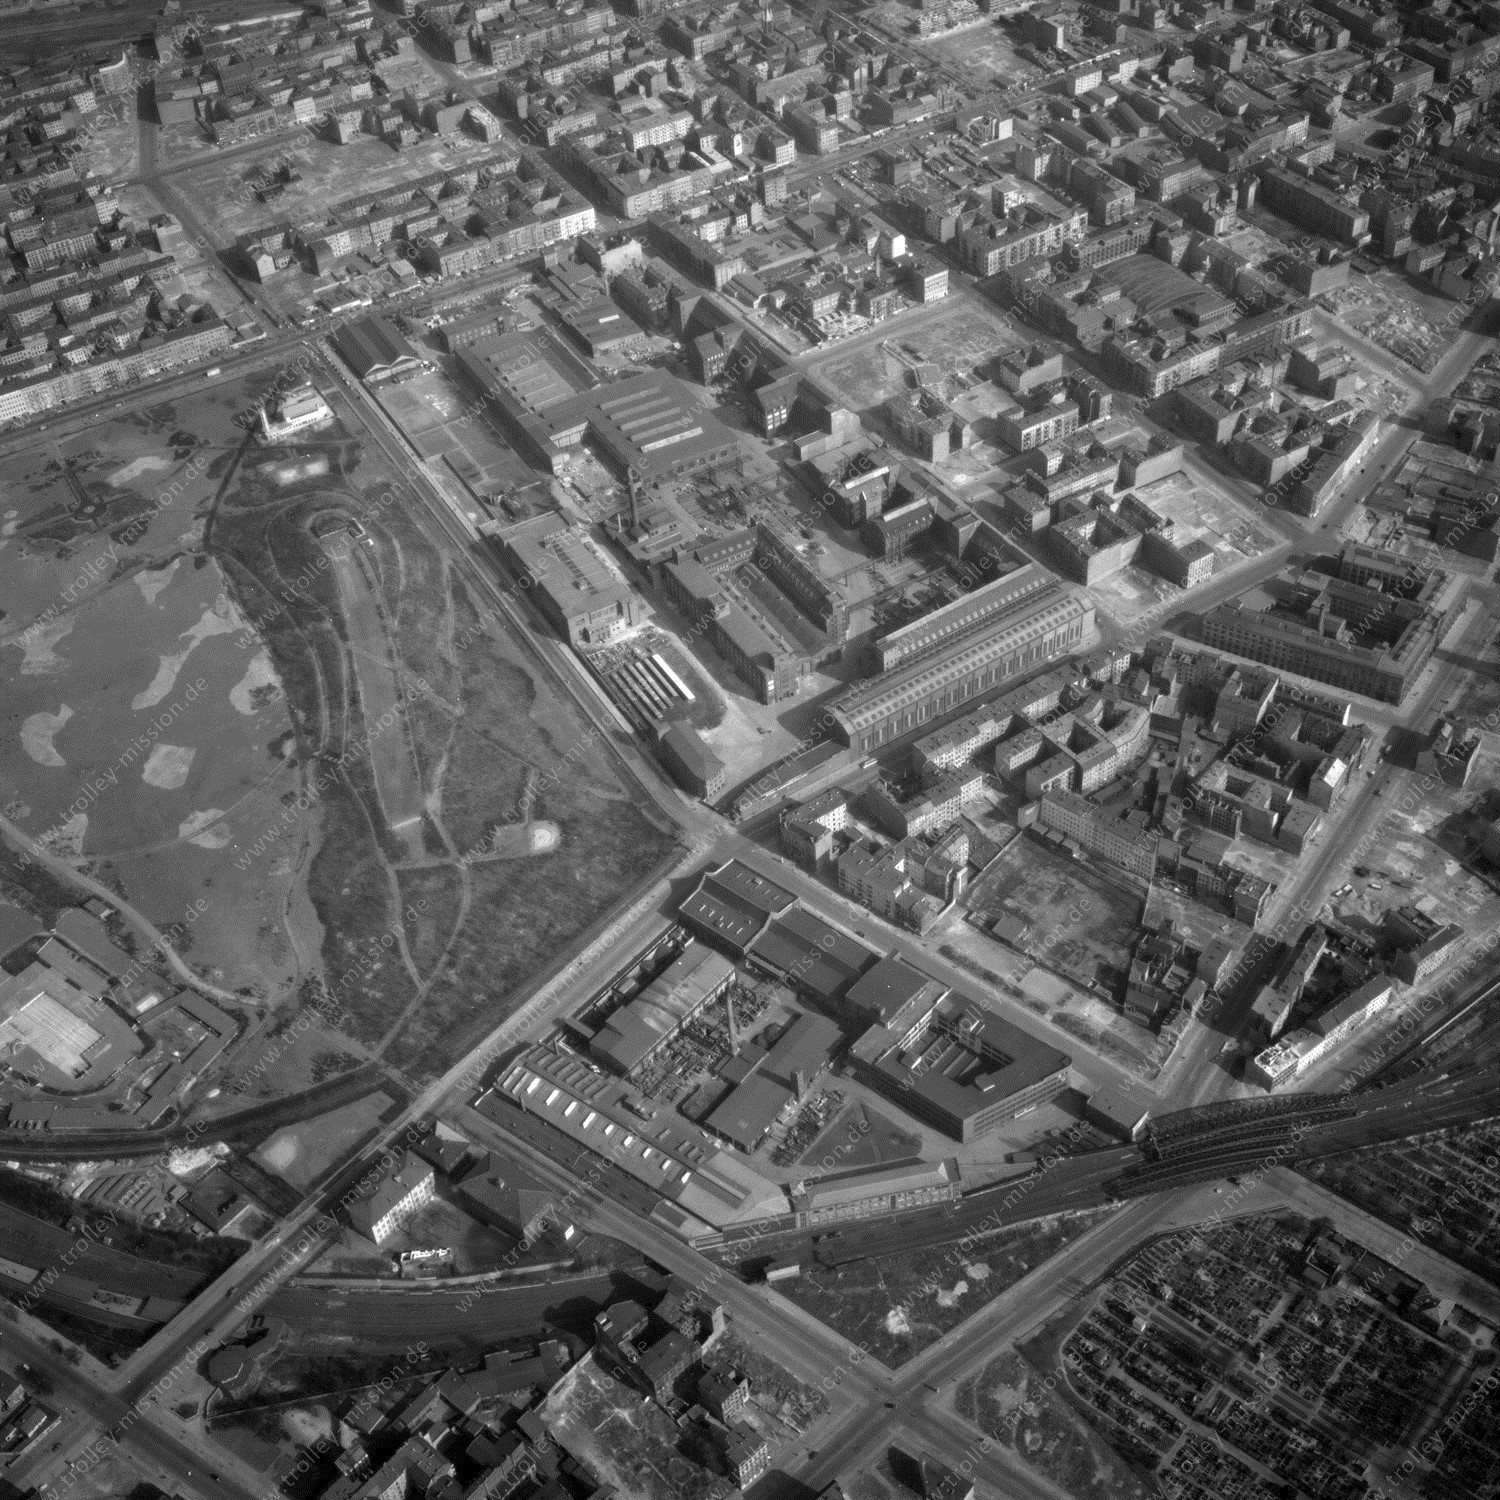 Alte Fotos und Luftbilder von Berlin - Luftbildaufnahme Nr. 06 - Historische Luftaufnahmen von West-Berlin aus dem Jahr 1954 - Flugstrecke Romeo